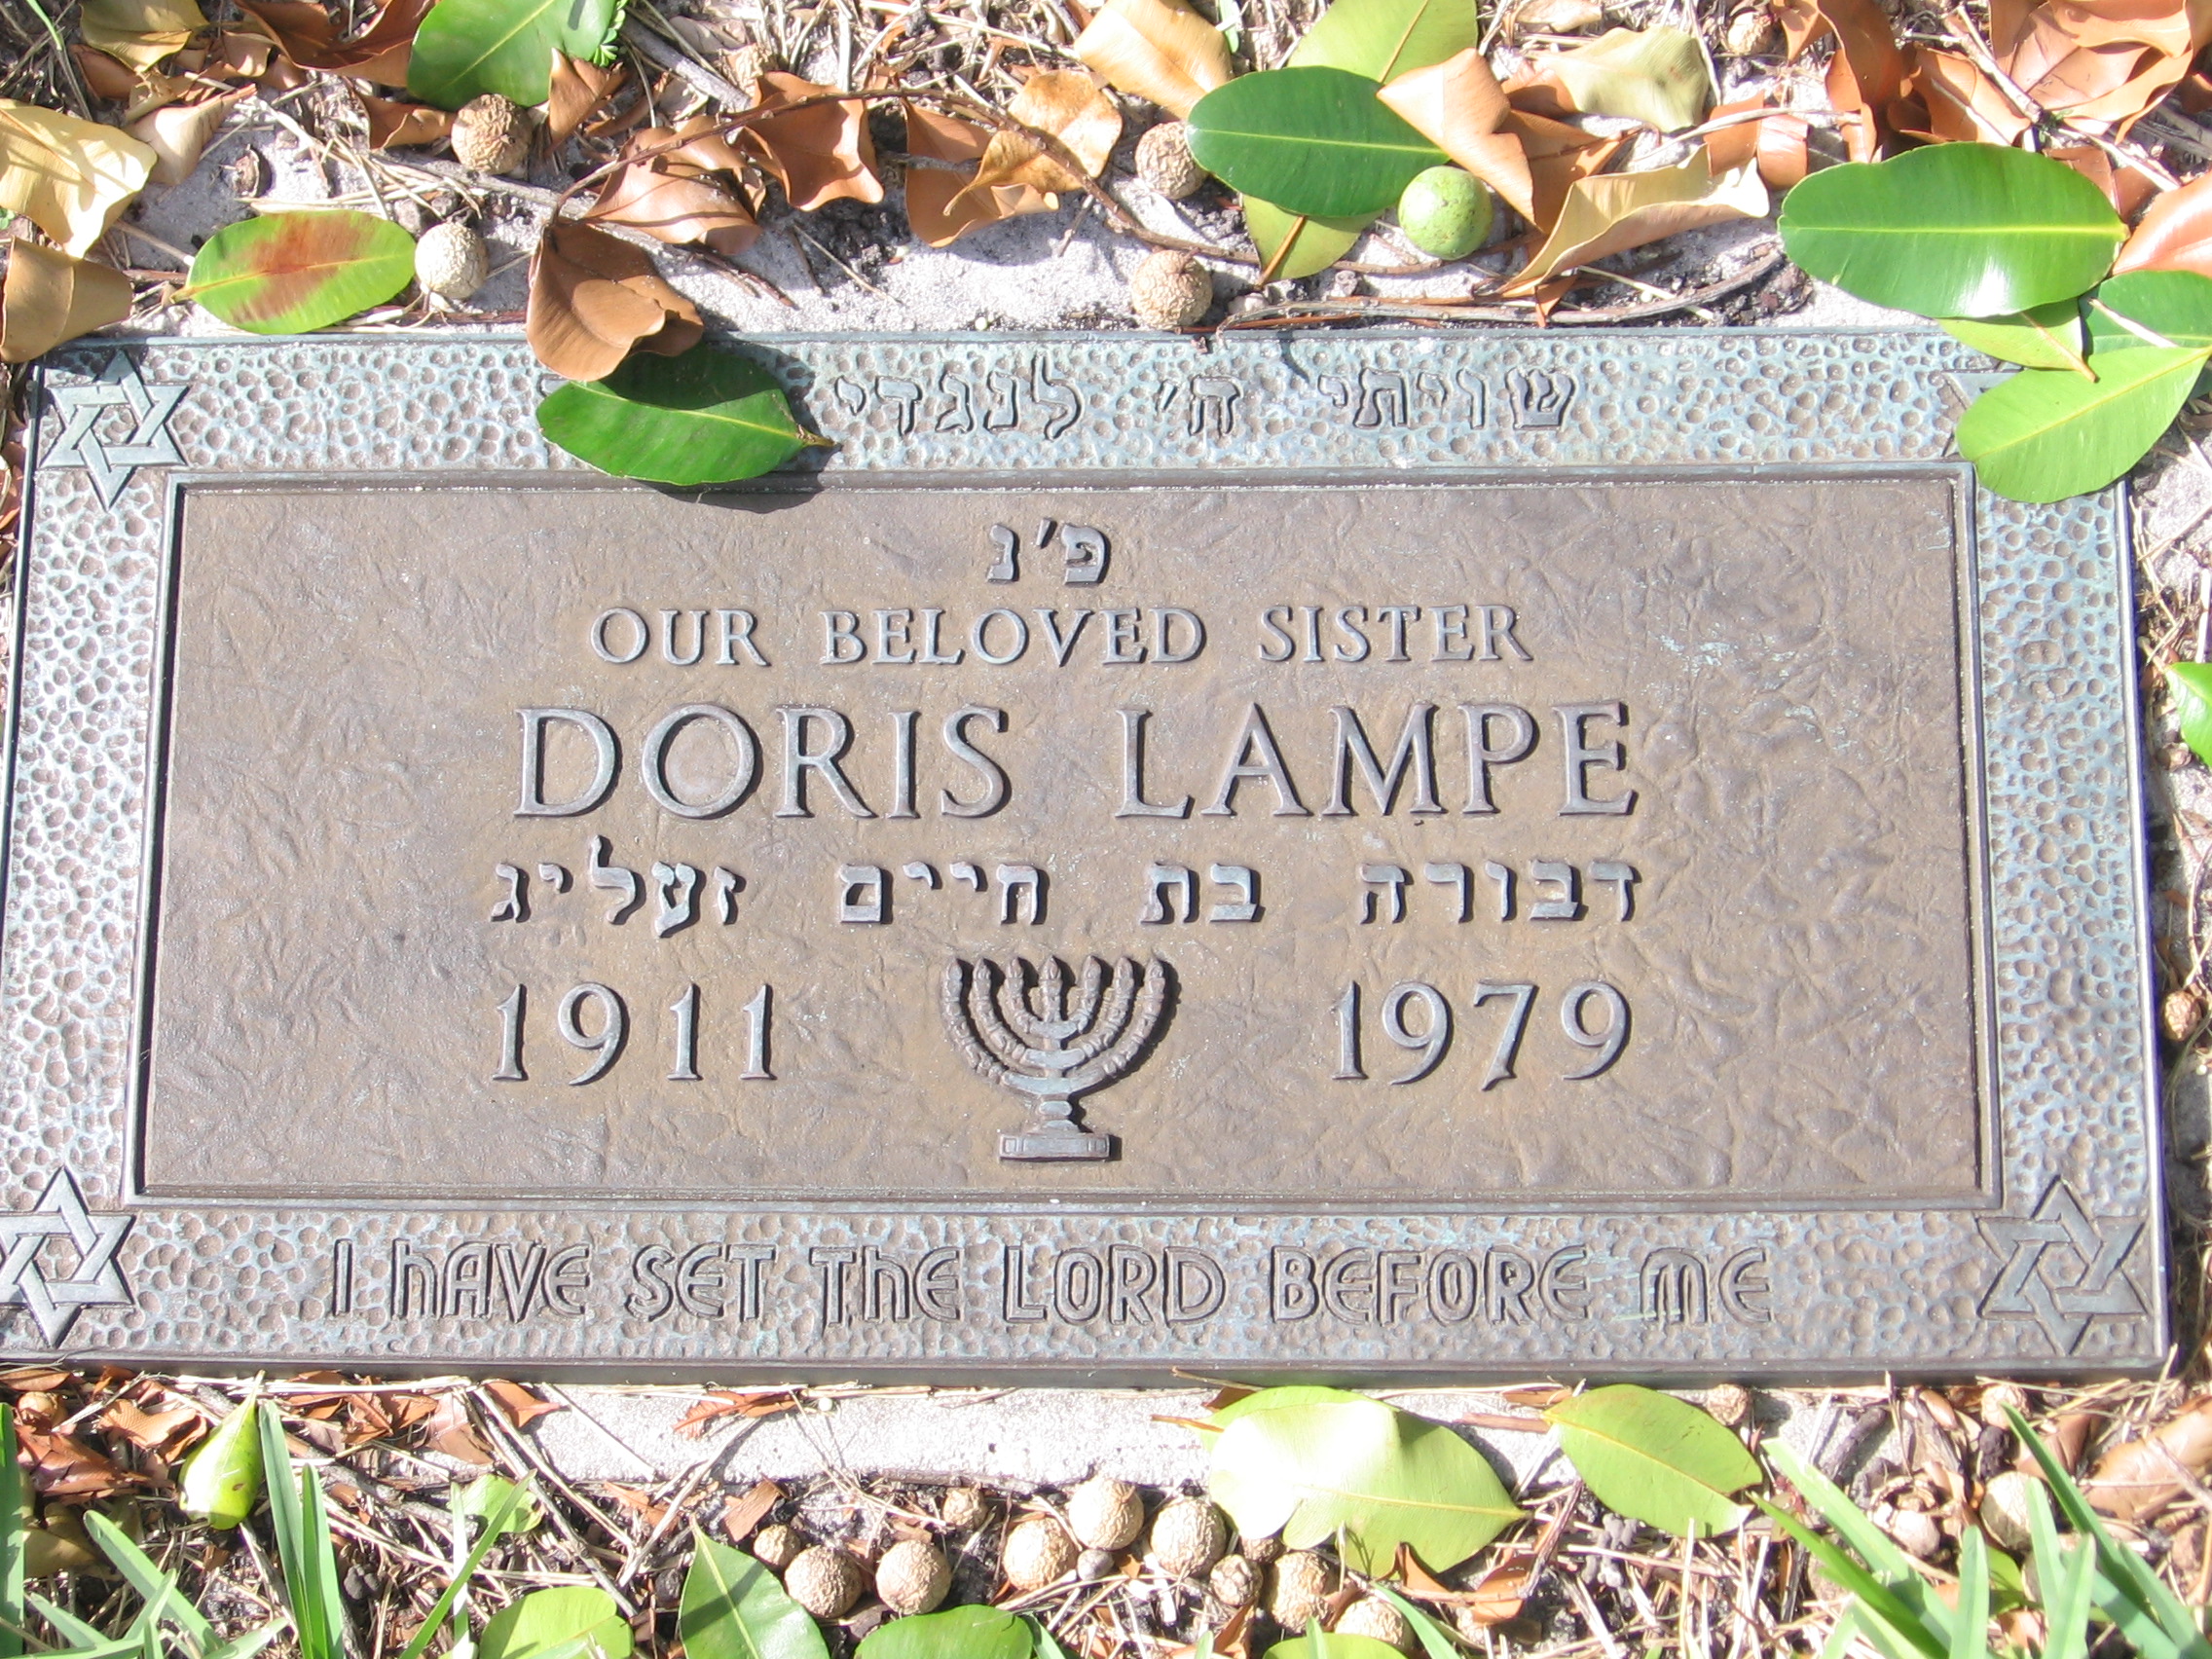 Doris Lampe